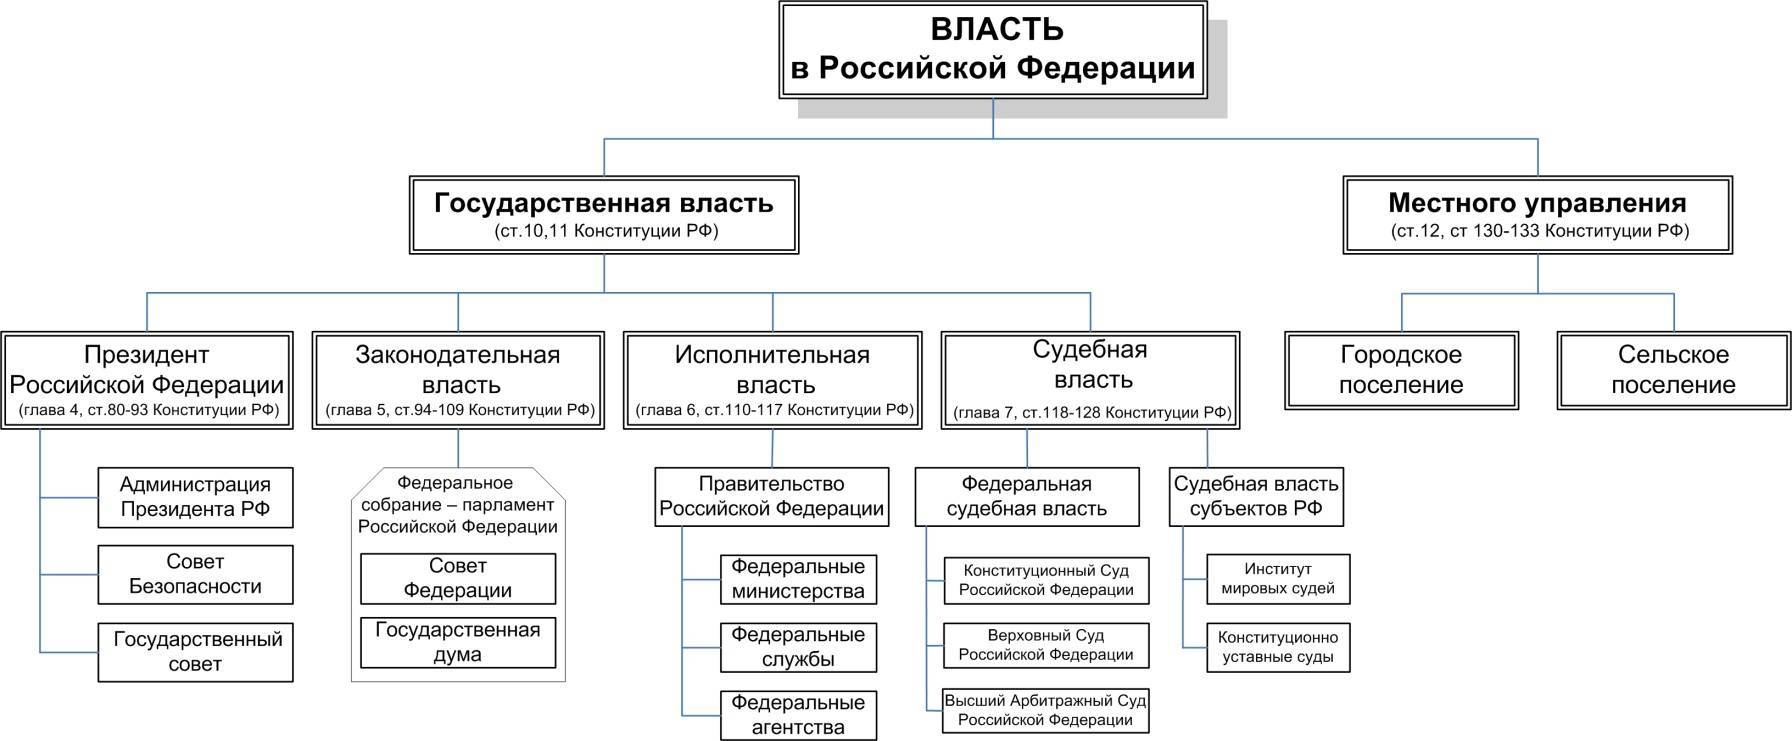 Парламент рф, как называется орган власти в российской федерации